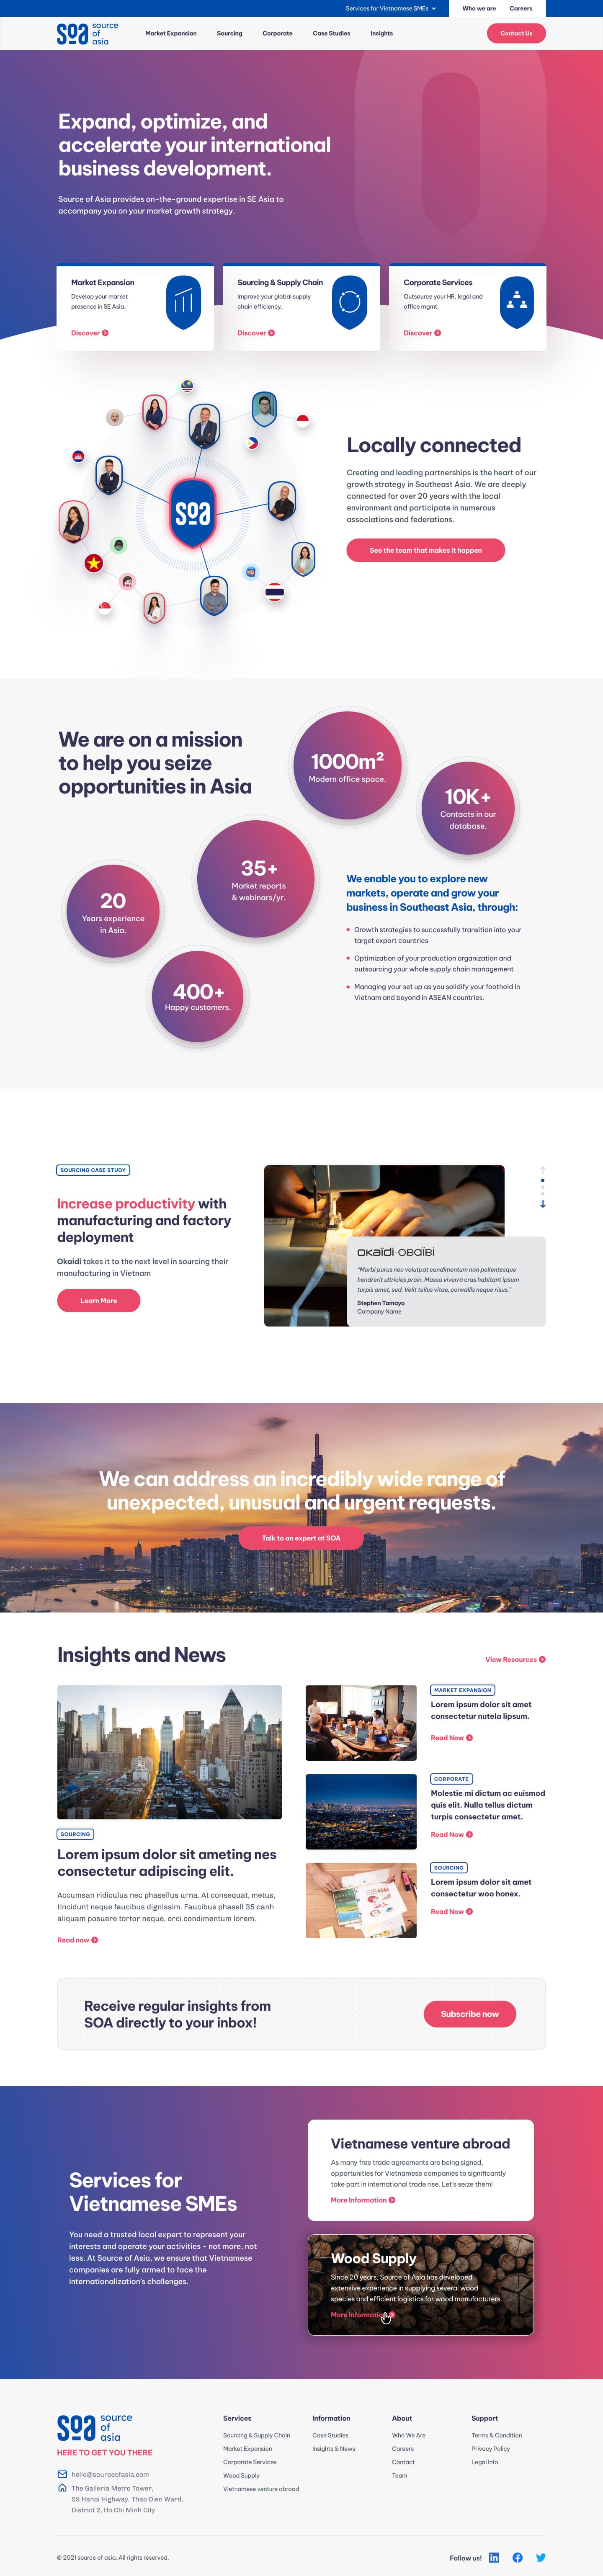 B2B Website SoA homepage